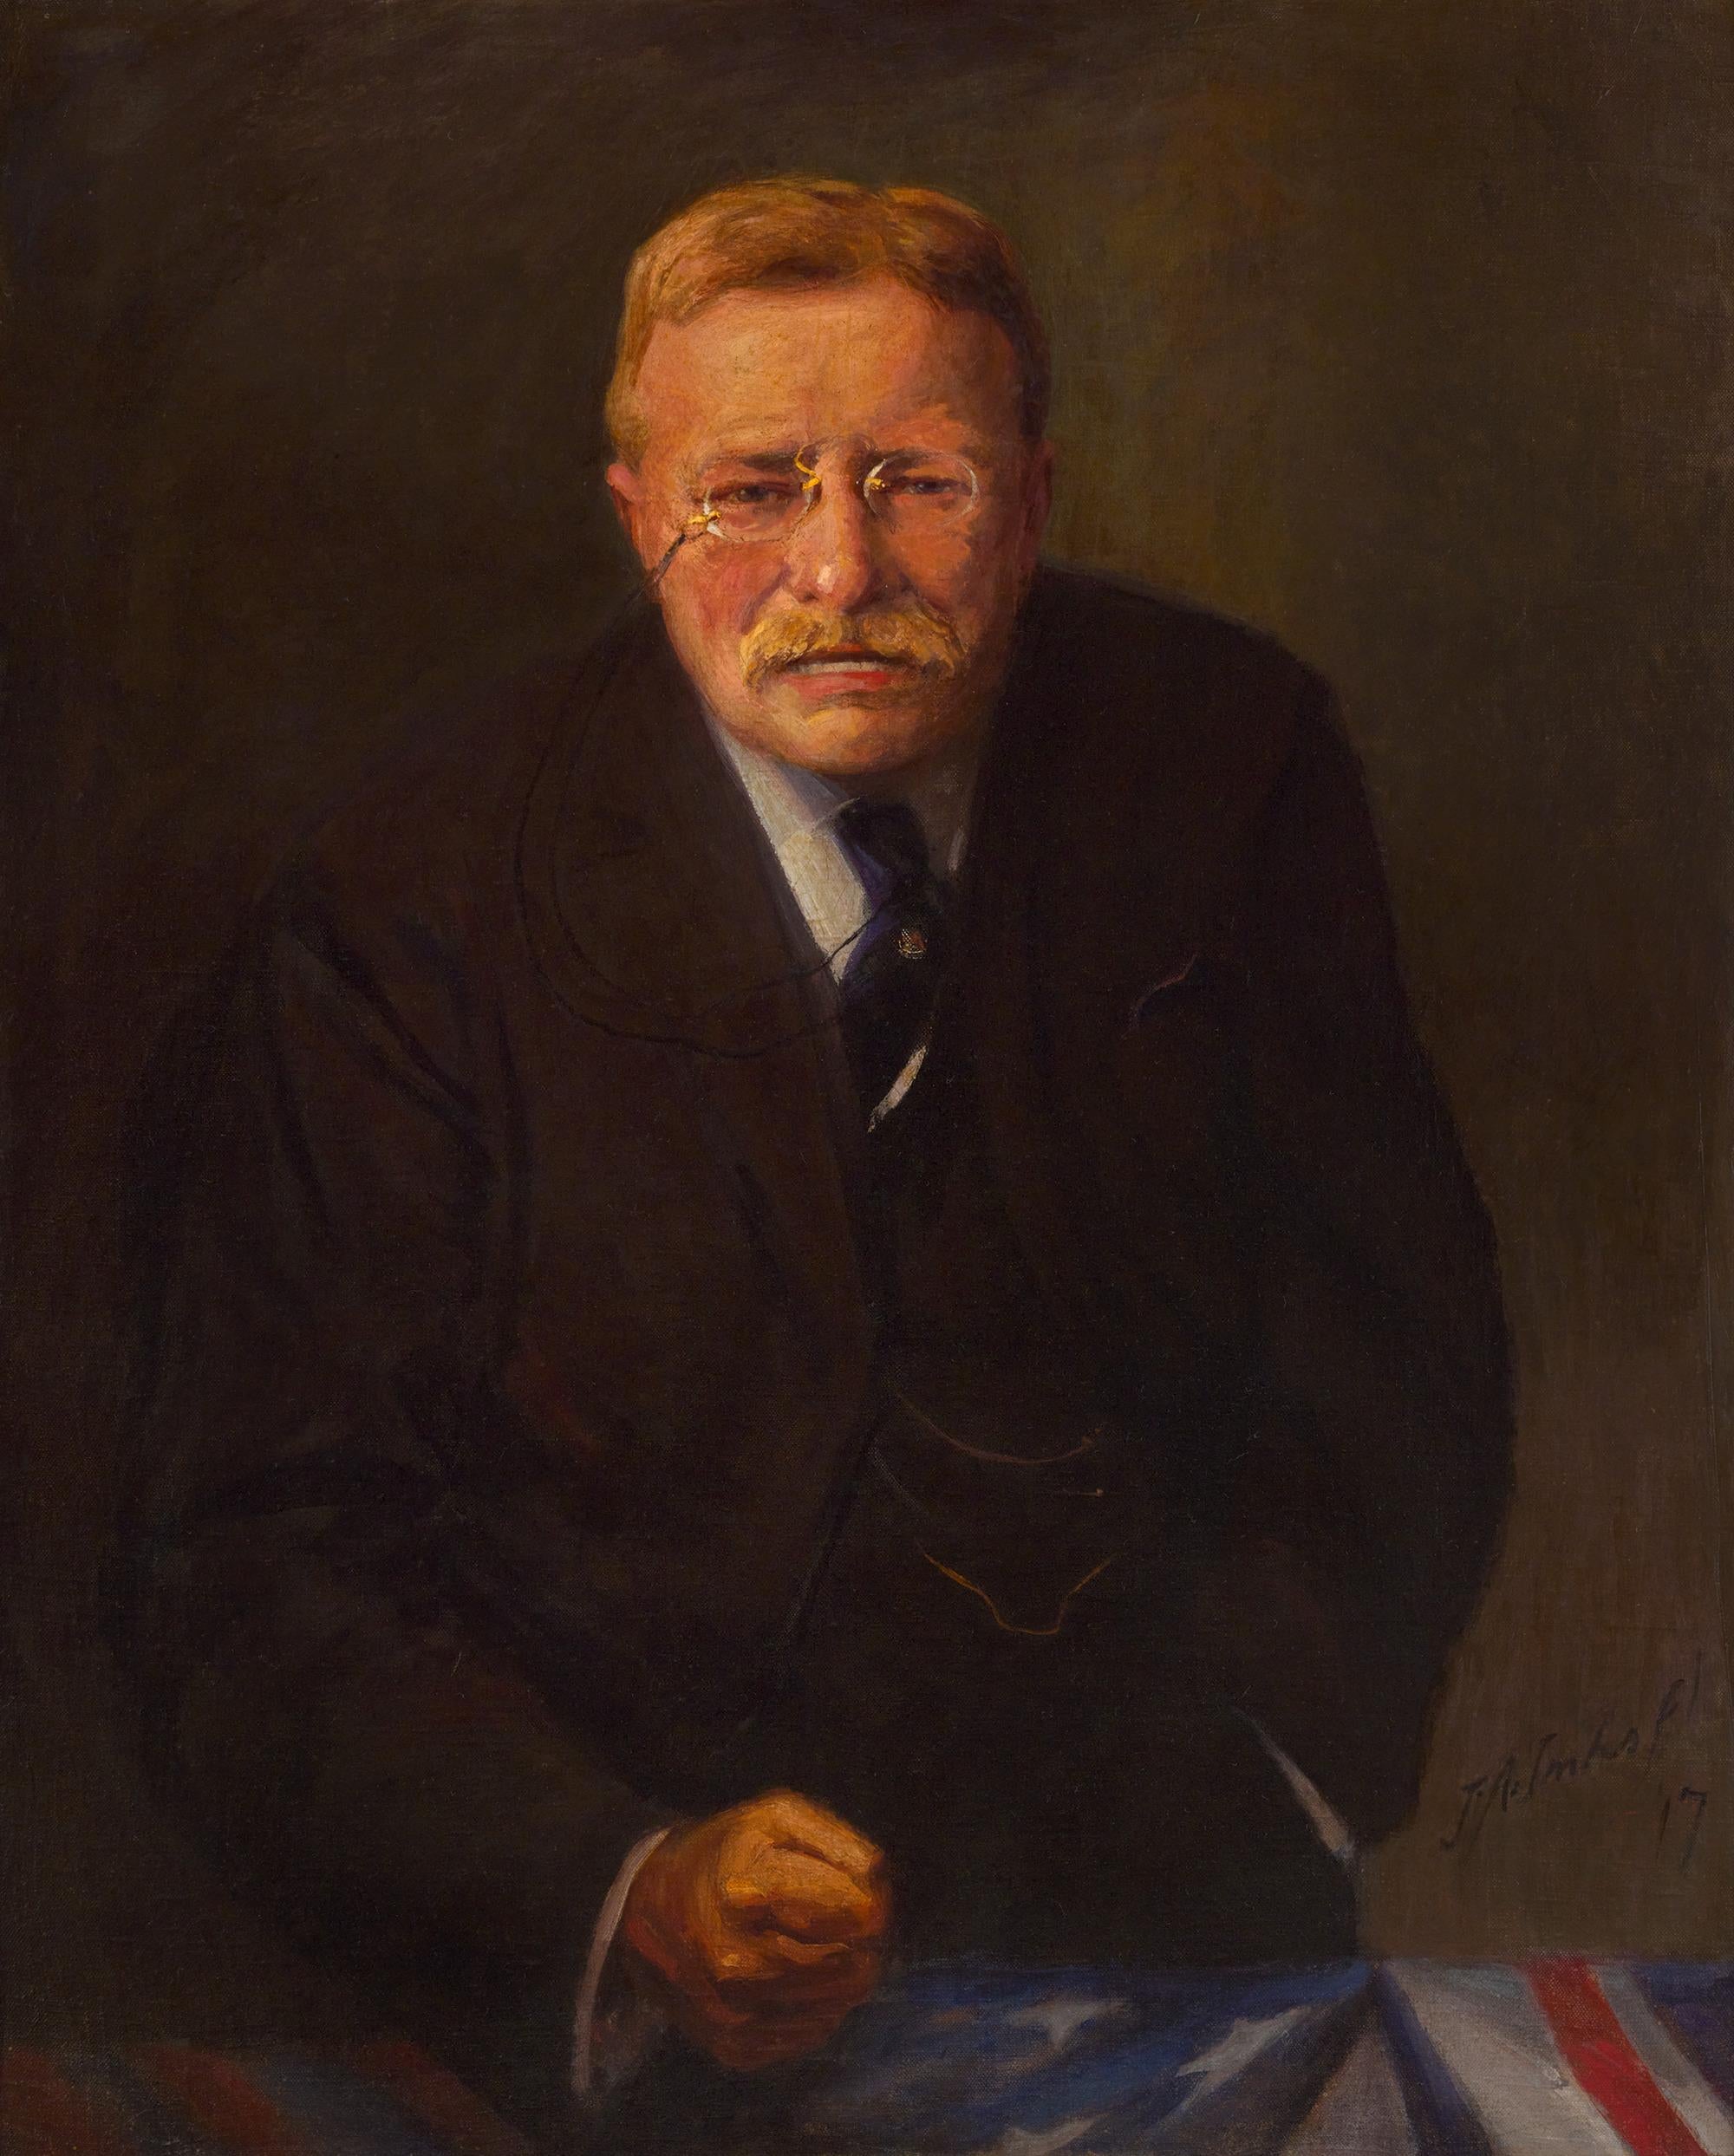 Porträt von Theodore Roosevelt von Joseph A. Imhof